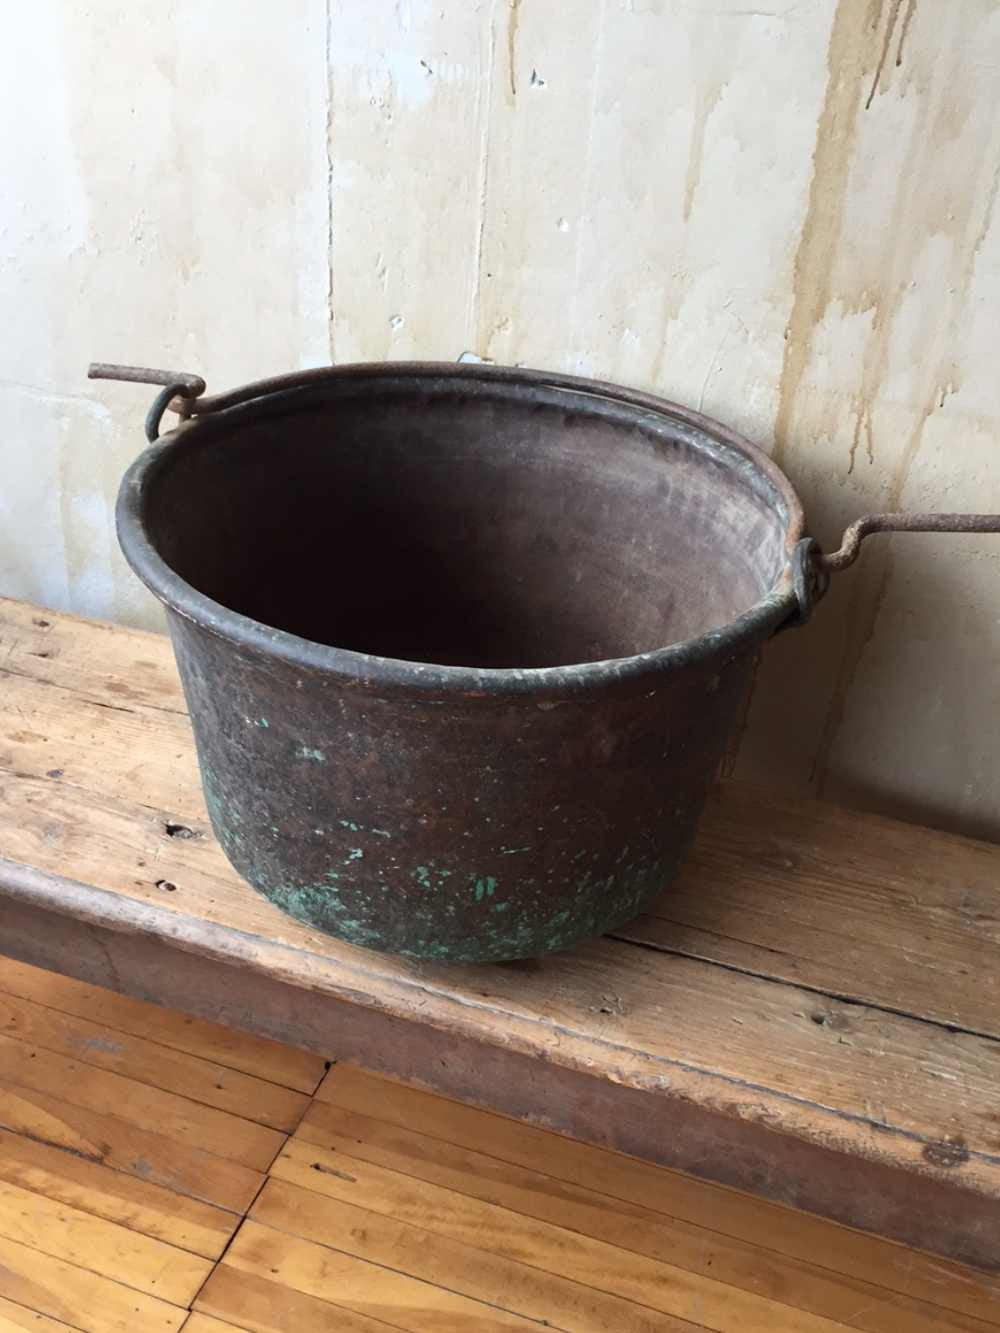 https://mercatoantiques.com/cdn/shop/products/italian-antique-copper-cook-pot.jpg?v=1456963346